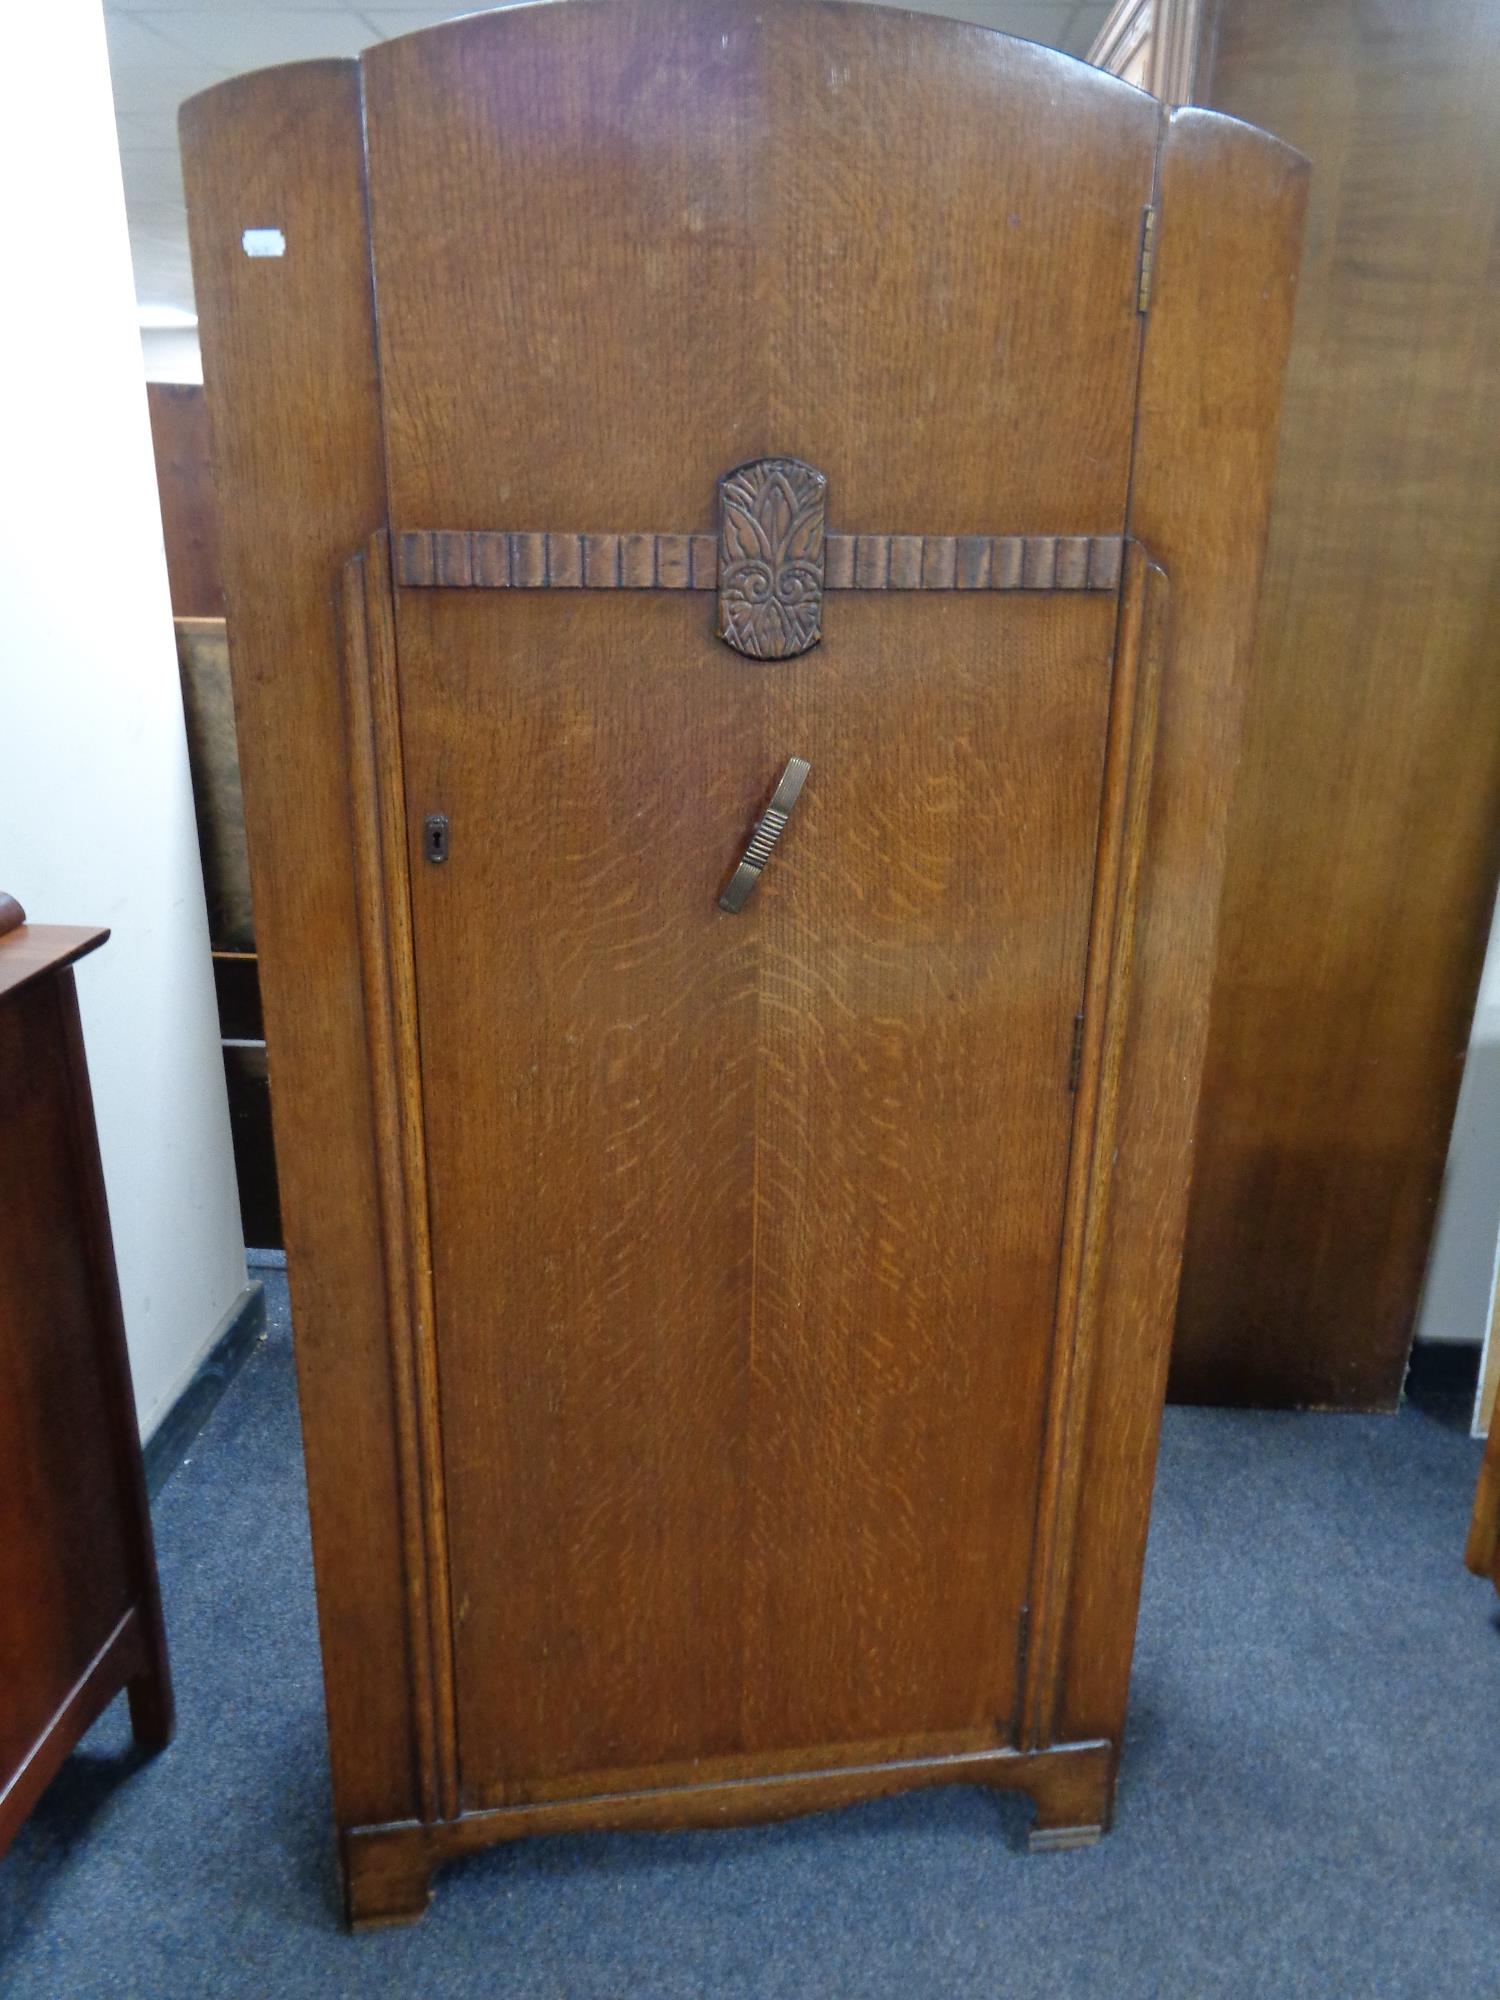 A 1930's oak single door wardrobe